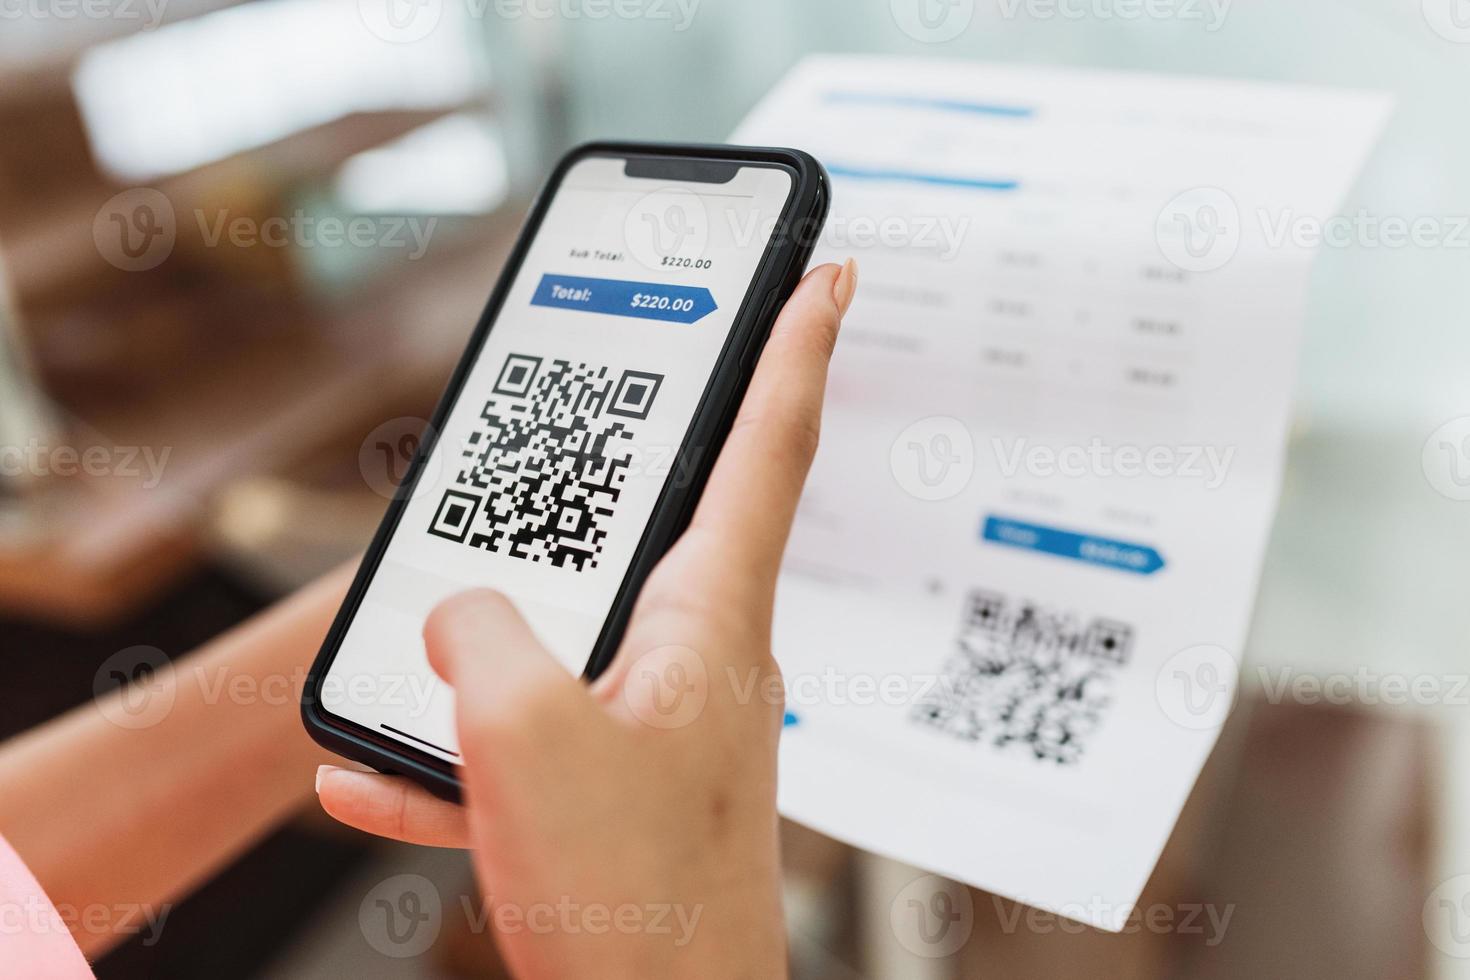 nouvelle forme de paiement des factures et des factures au brésil. femme tenant un téléphone portable avec application pix avec code qr, x gros plan de l'écran. photo